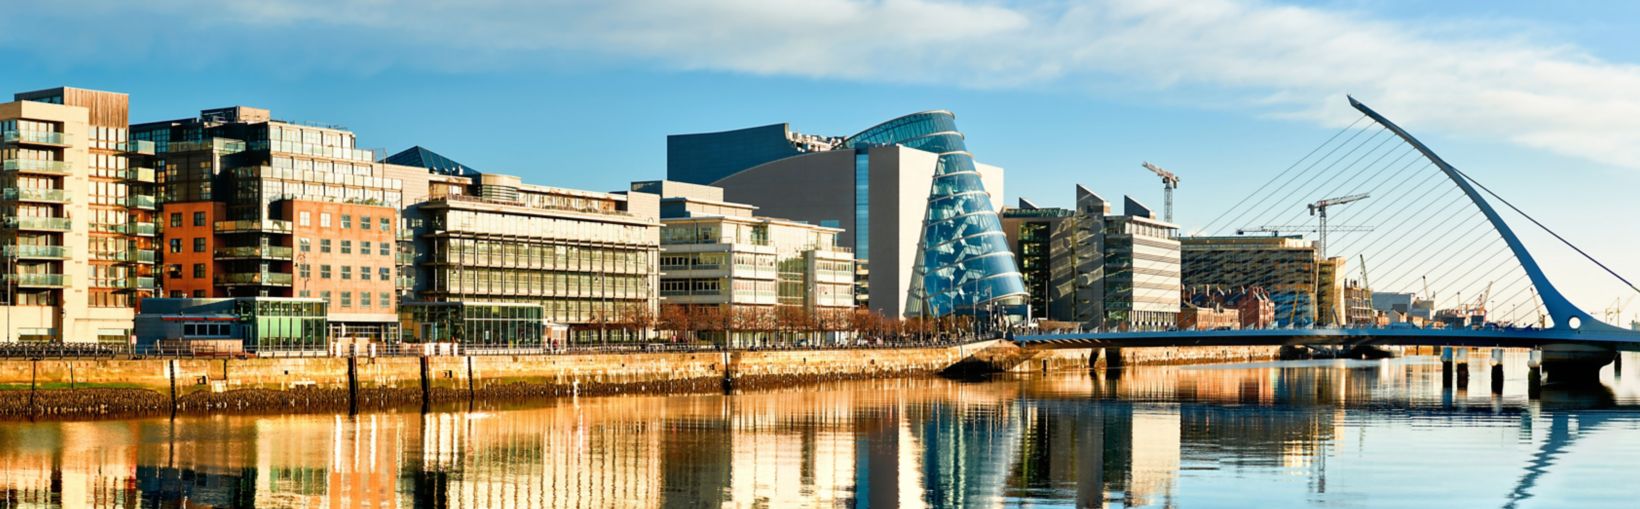 Edificios y oficinas modernos en el río Liffey en Dublín en un día soleado y luminoso, con el puente Harp a la derecha